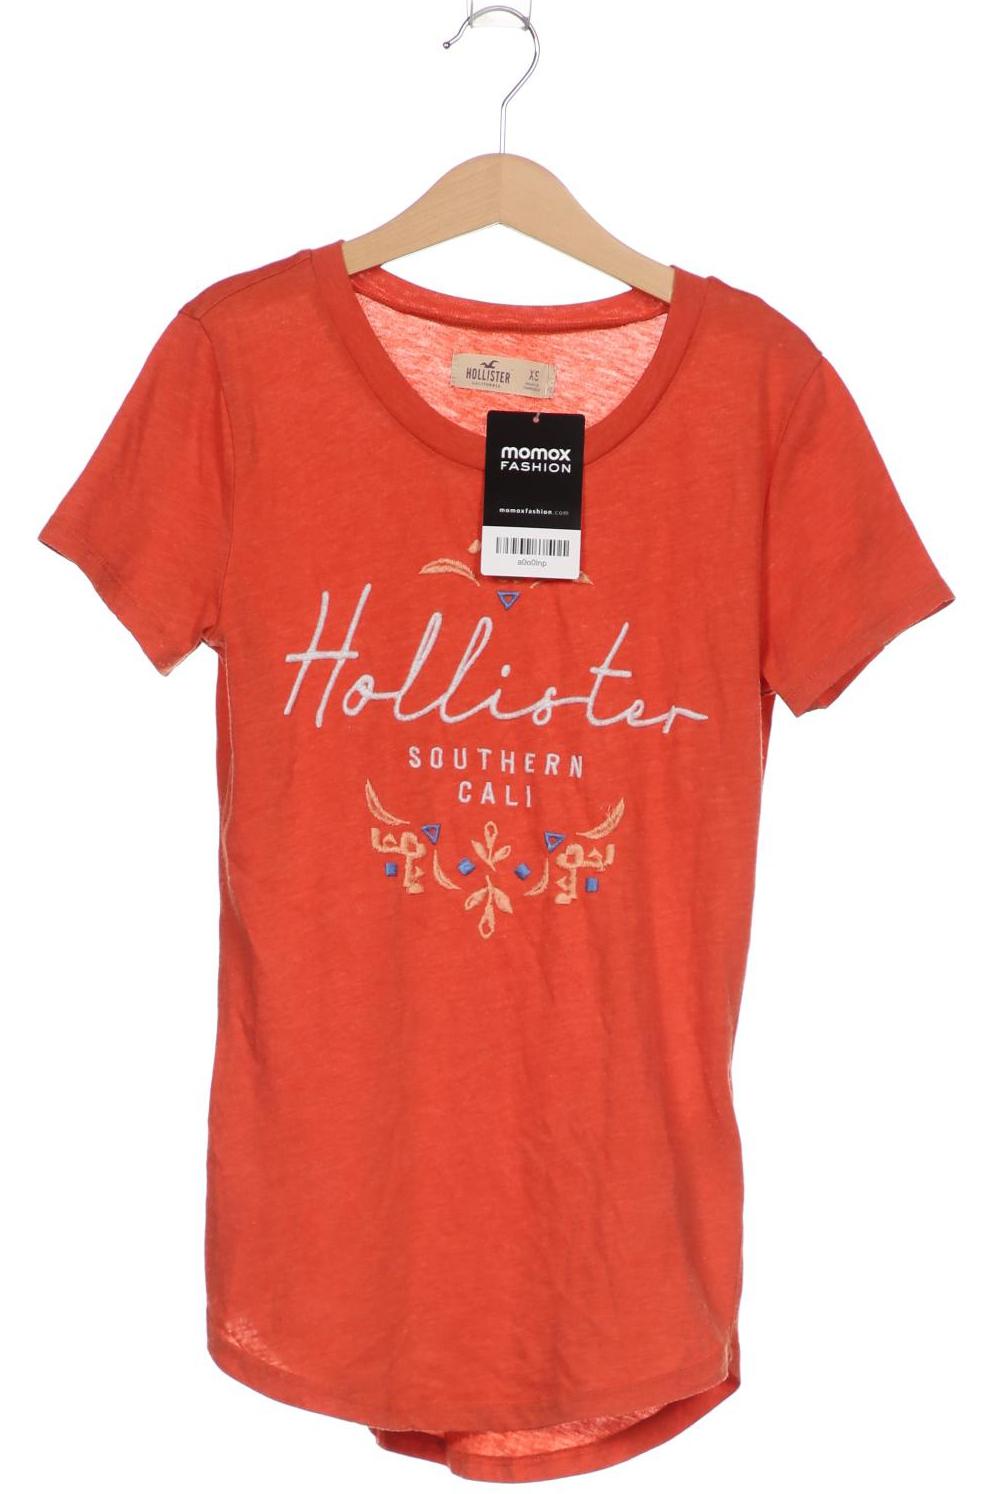 Hollister Damen T-Shirt, orange, Gr. 34 von Hollister